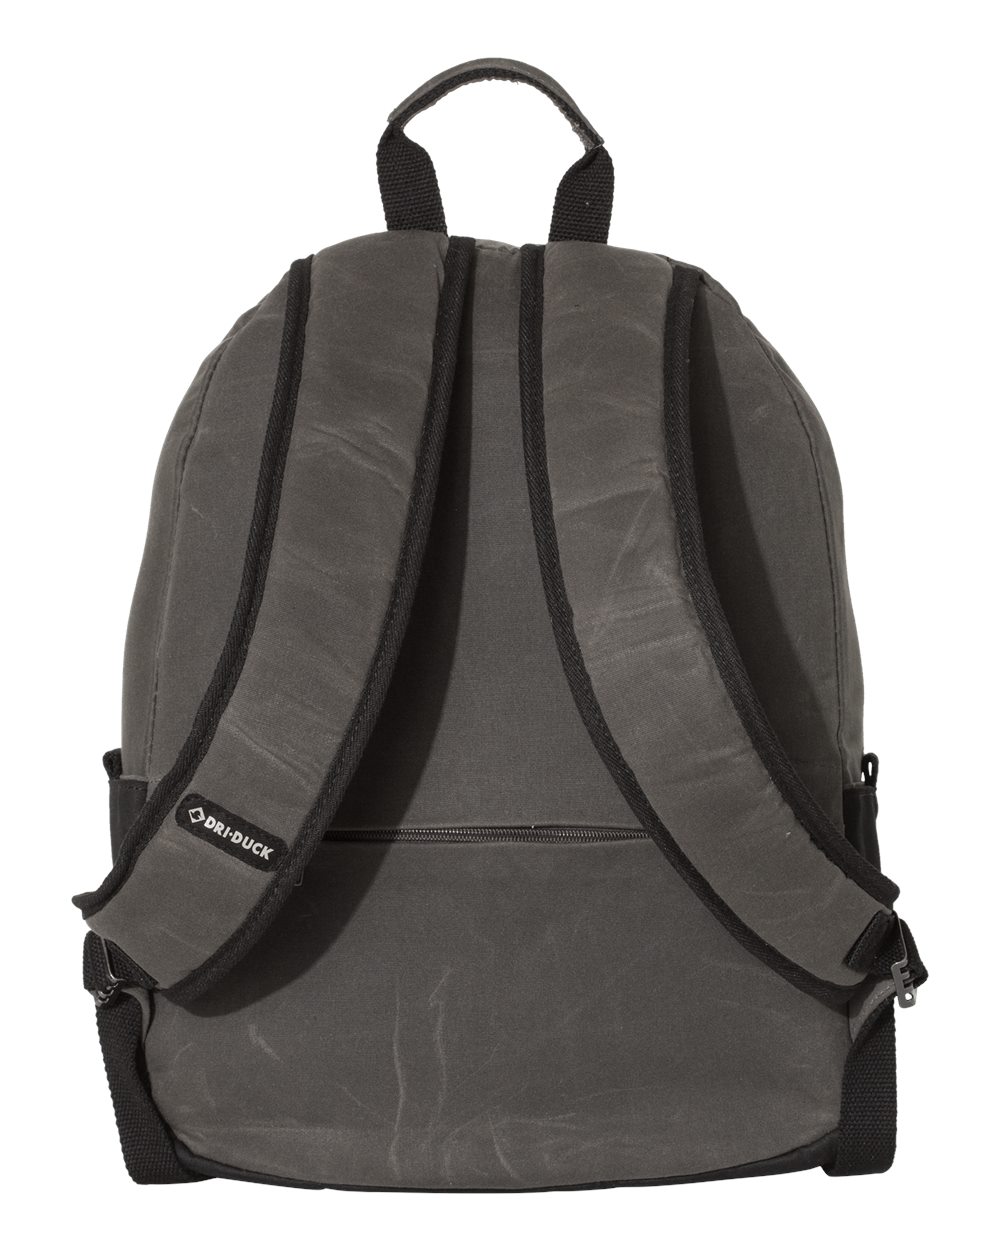 20L Essential Backpack - 1401-DKR